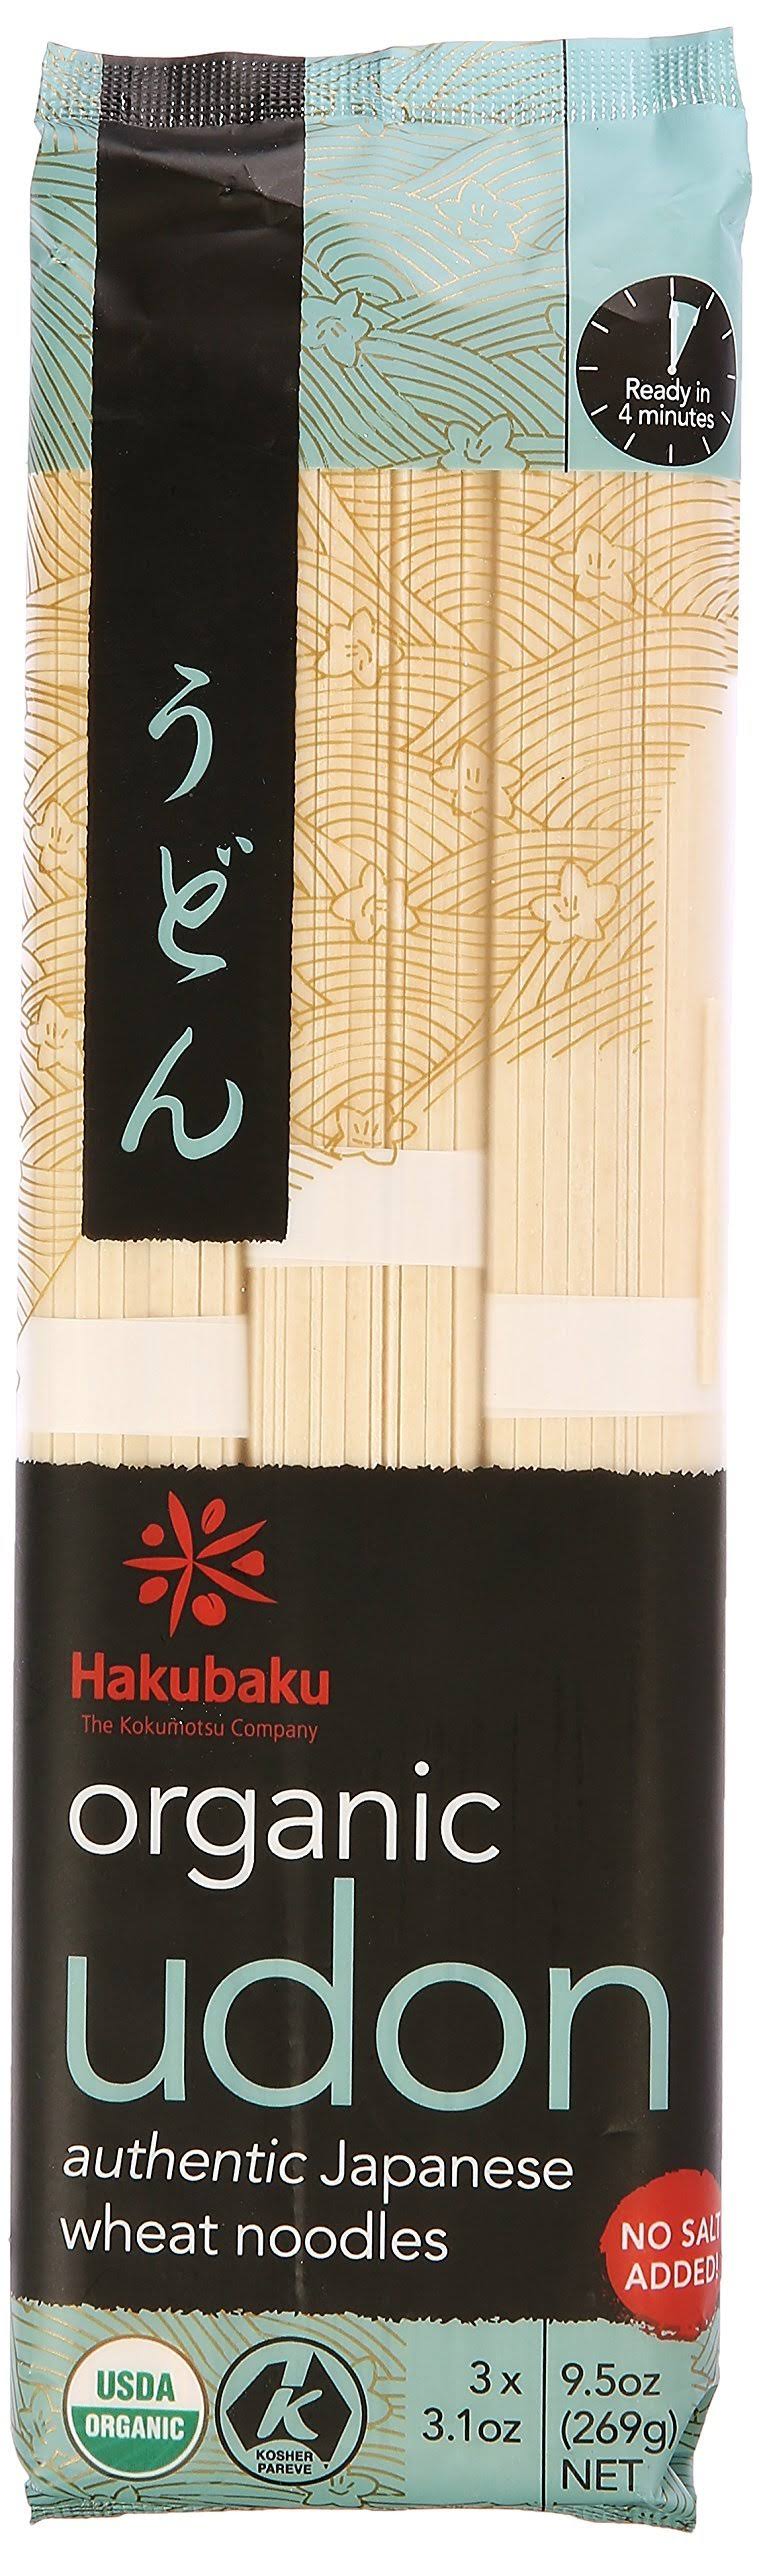 Hakubaku Organic Udon Authentic Japanese Wheat Noodles - 3.1oz, 3pk